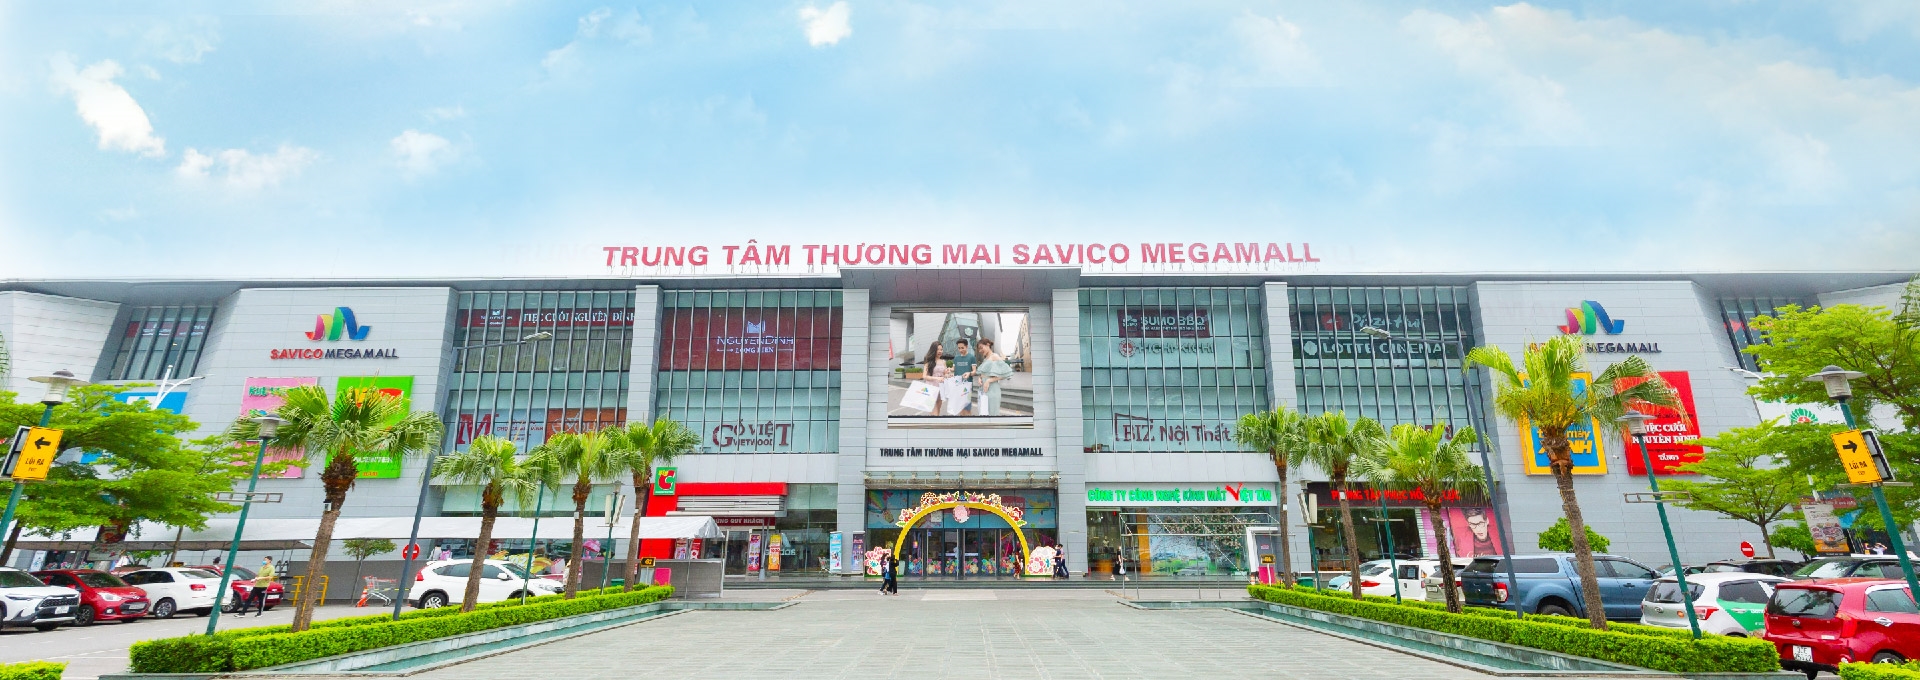 Trung tâm thương mại ở Hà Nội Savico Mega Mall